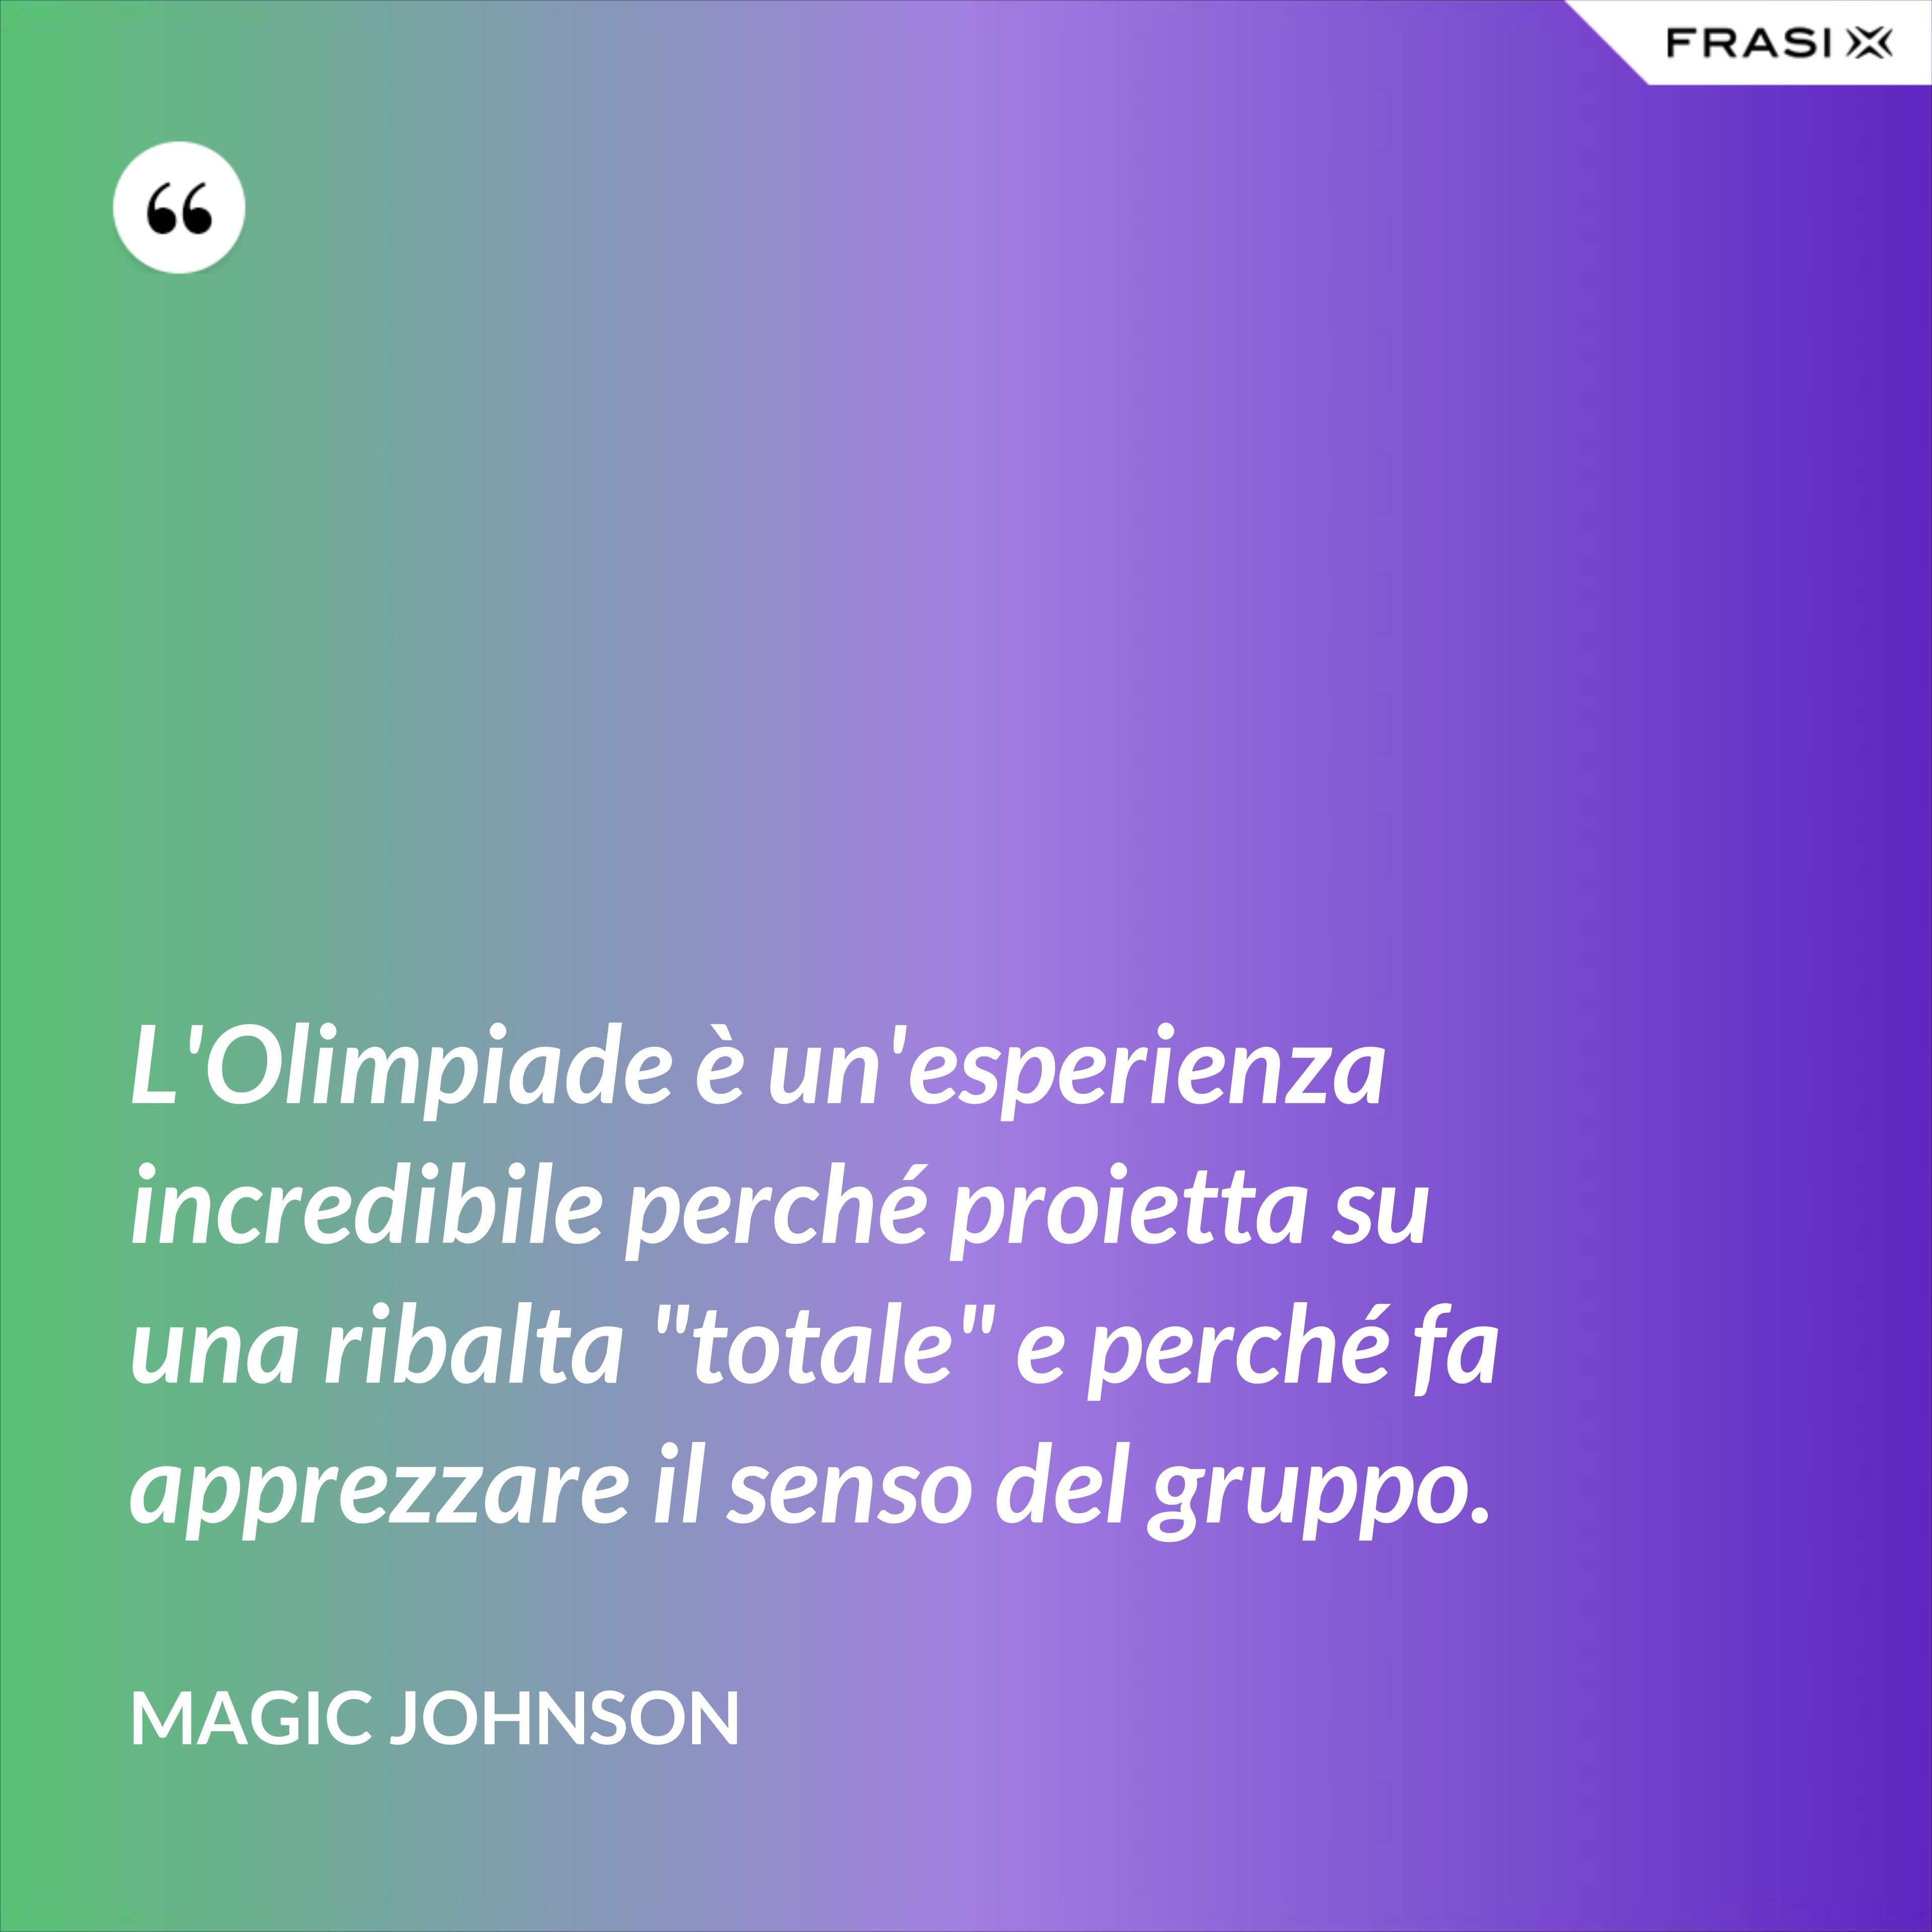 L'Olimpiade è un'esperienza incredibile perché proietta su una ribalta "totale" e perché fa apprezzare il senso del gruppo. - Magic Johnson